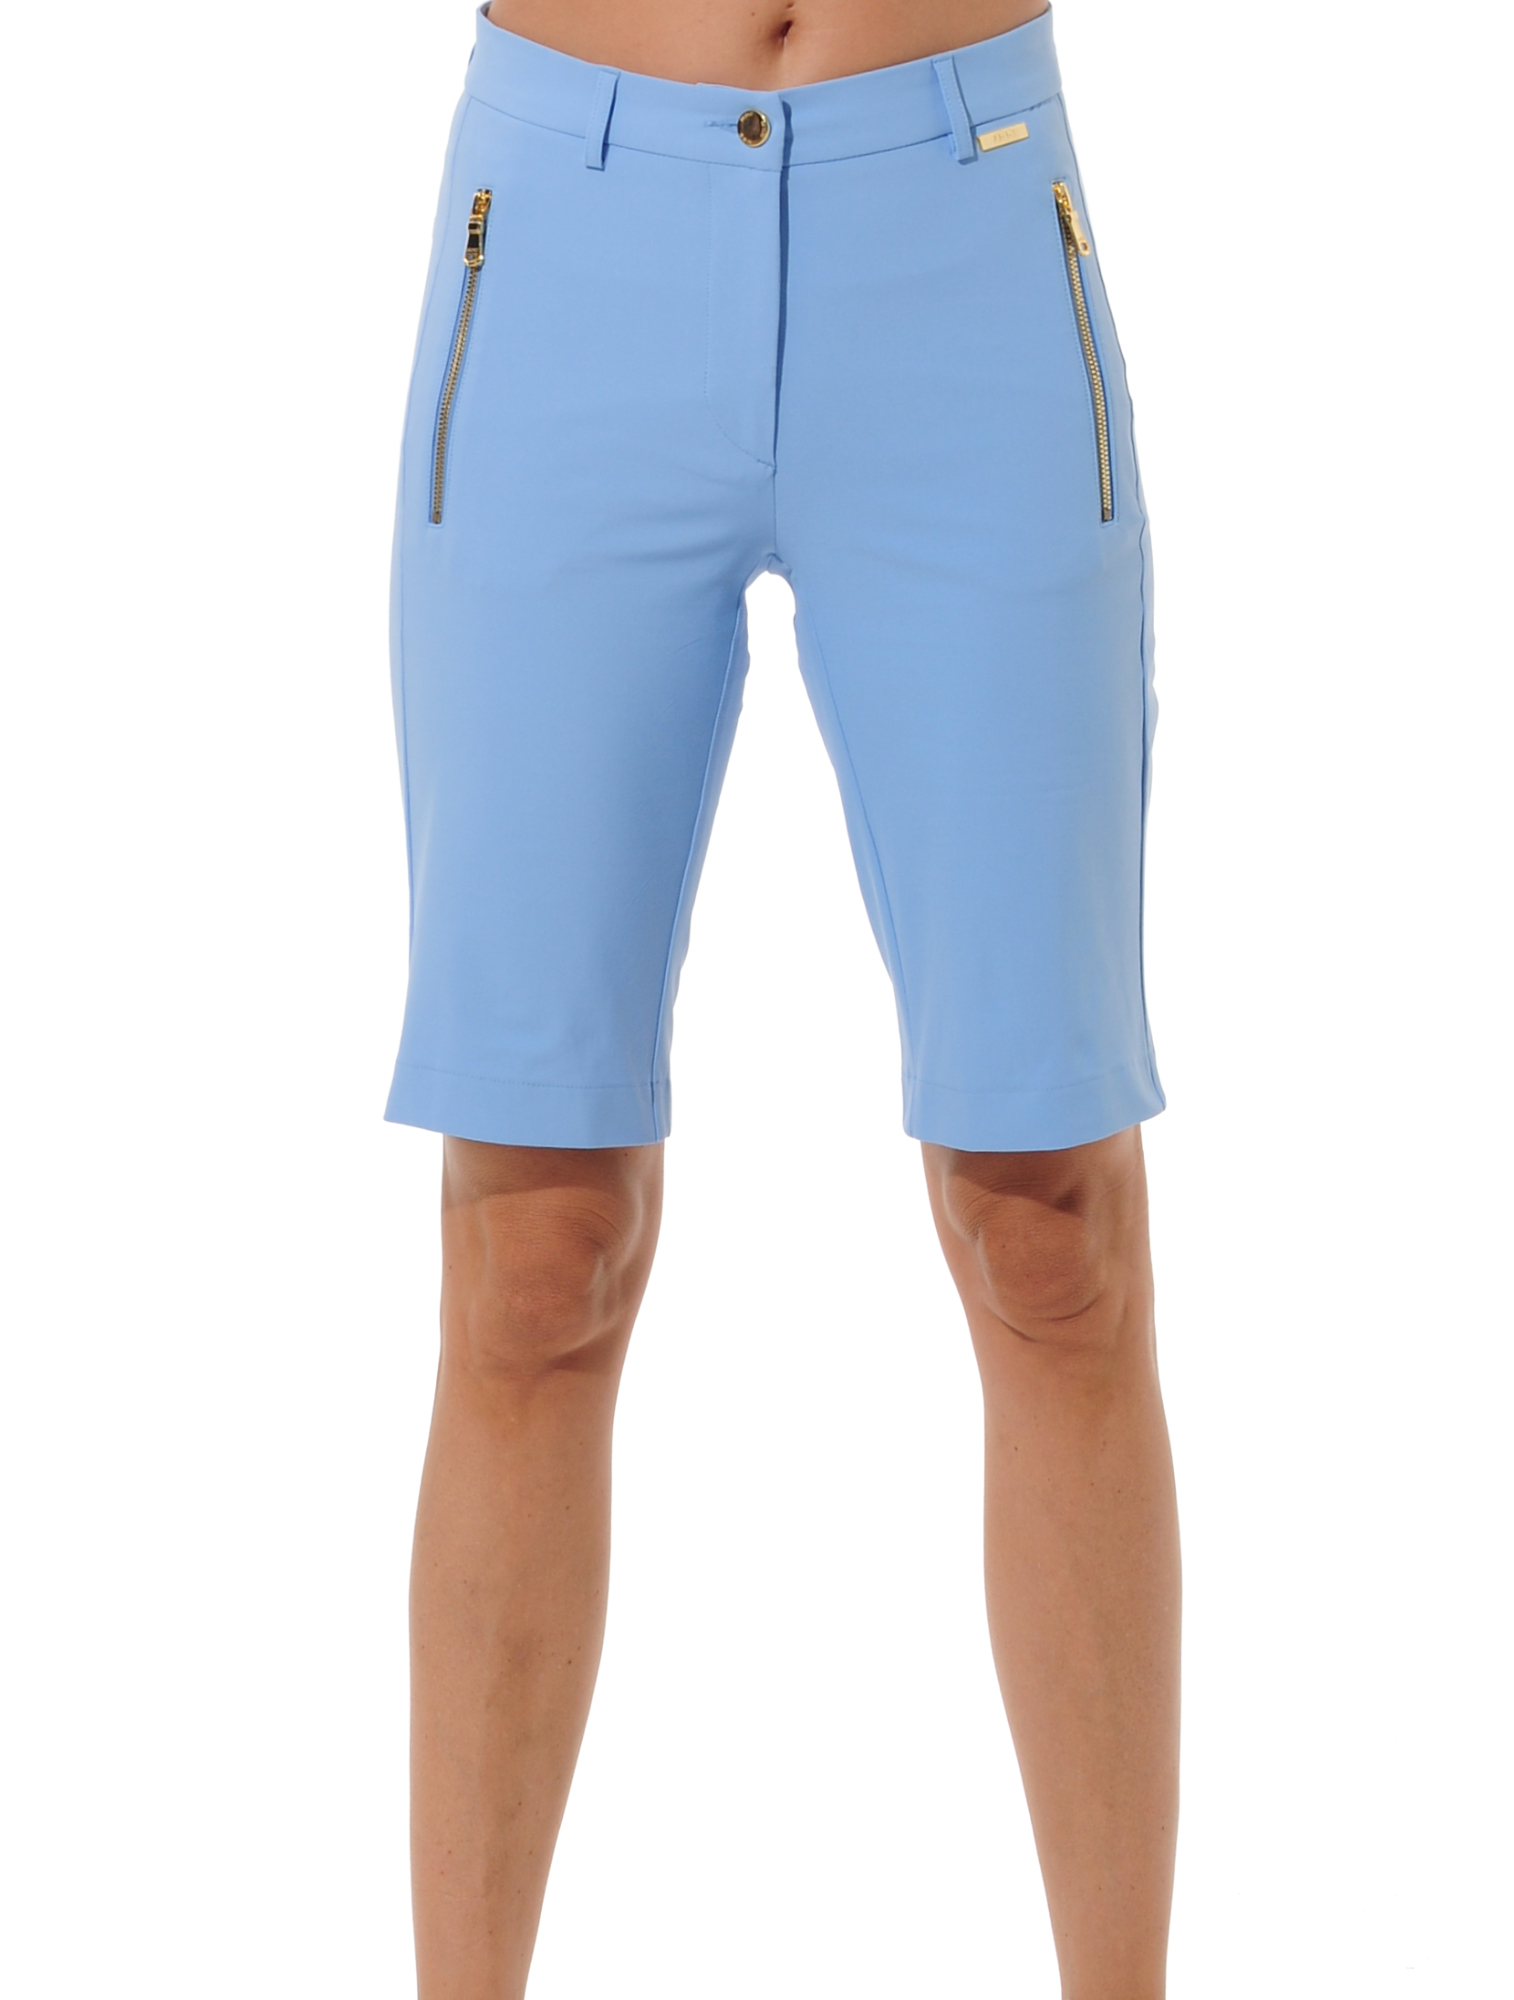 4way stretch golf bermuda shorts baby blue